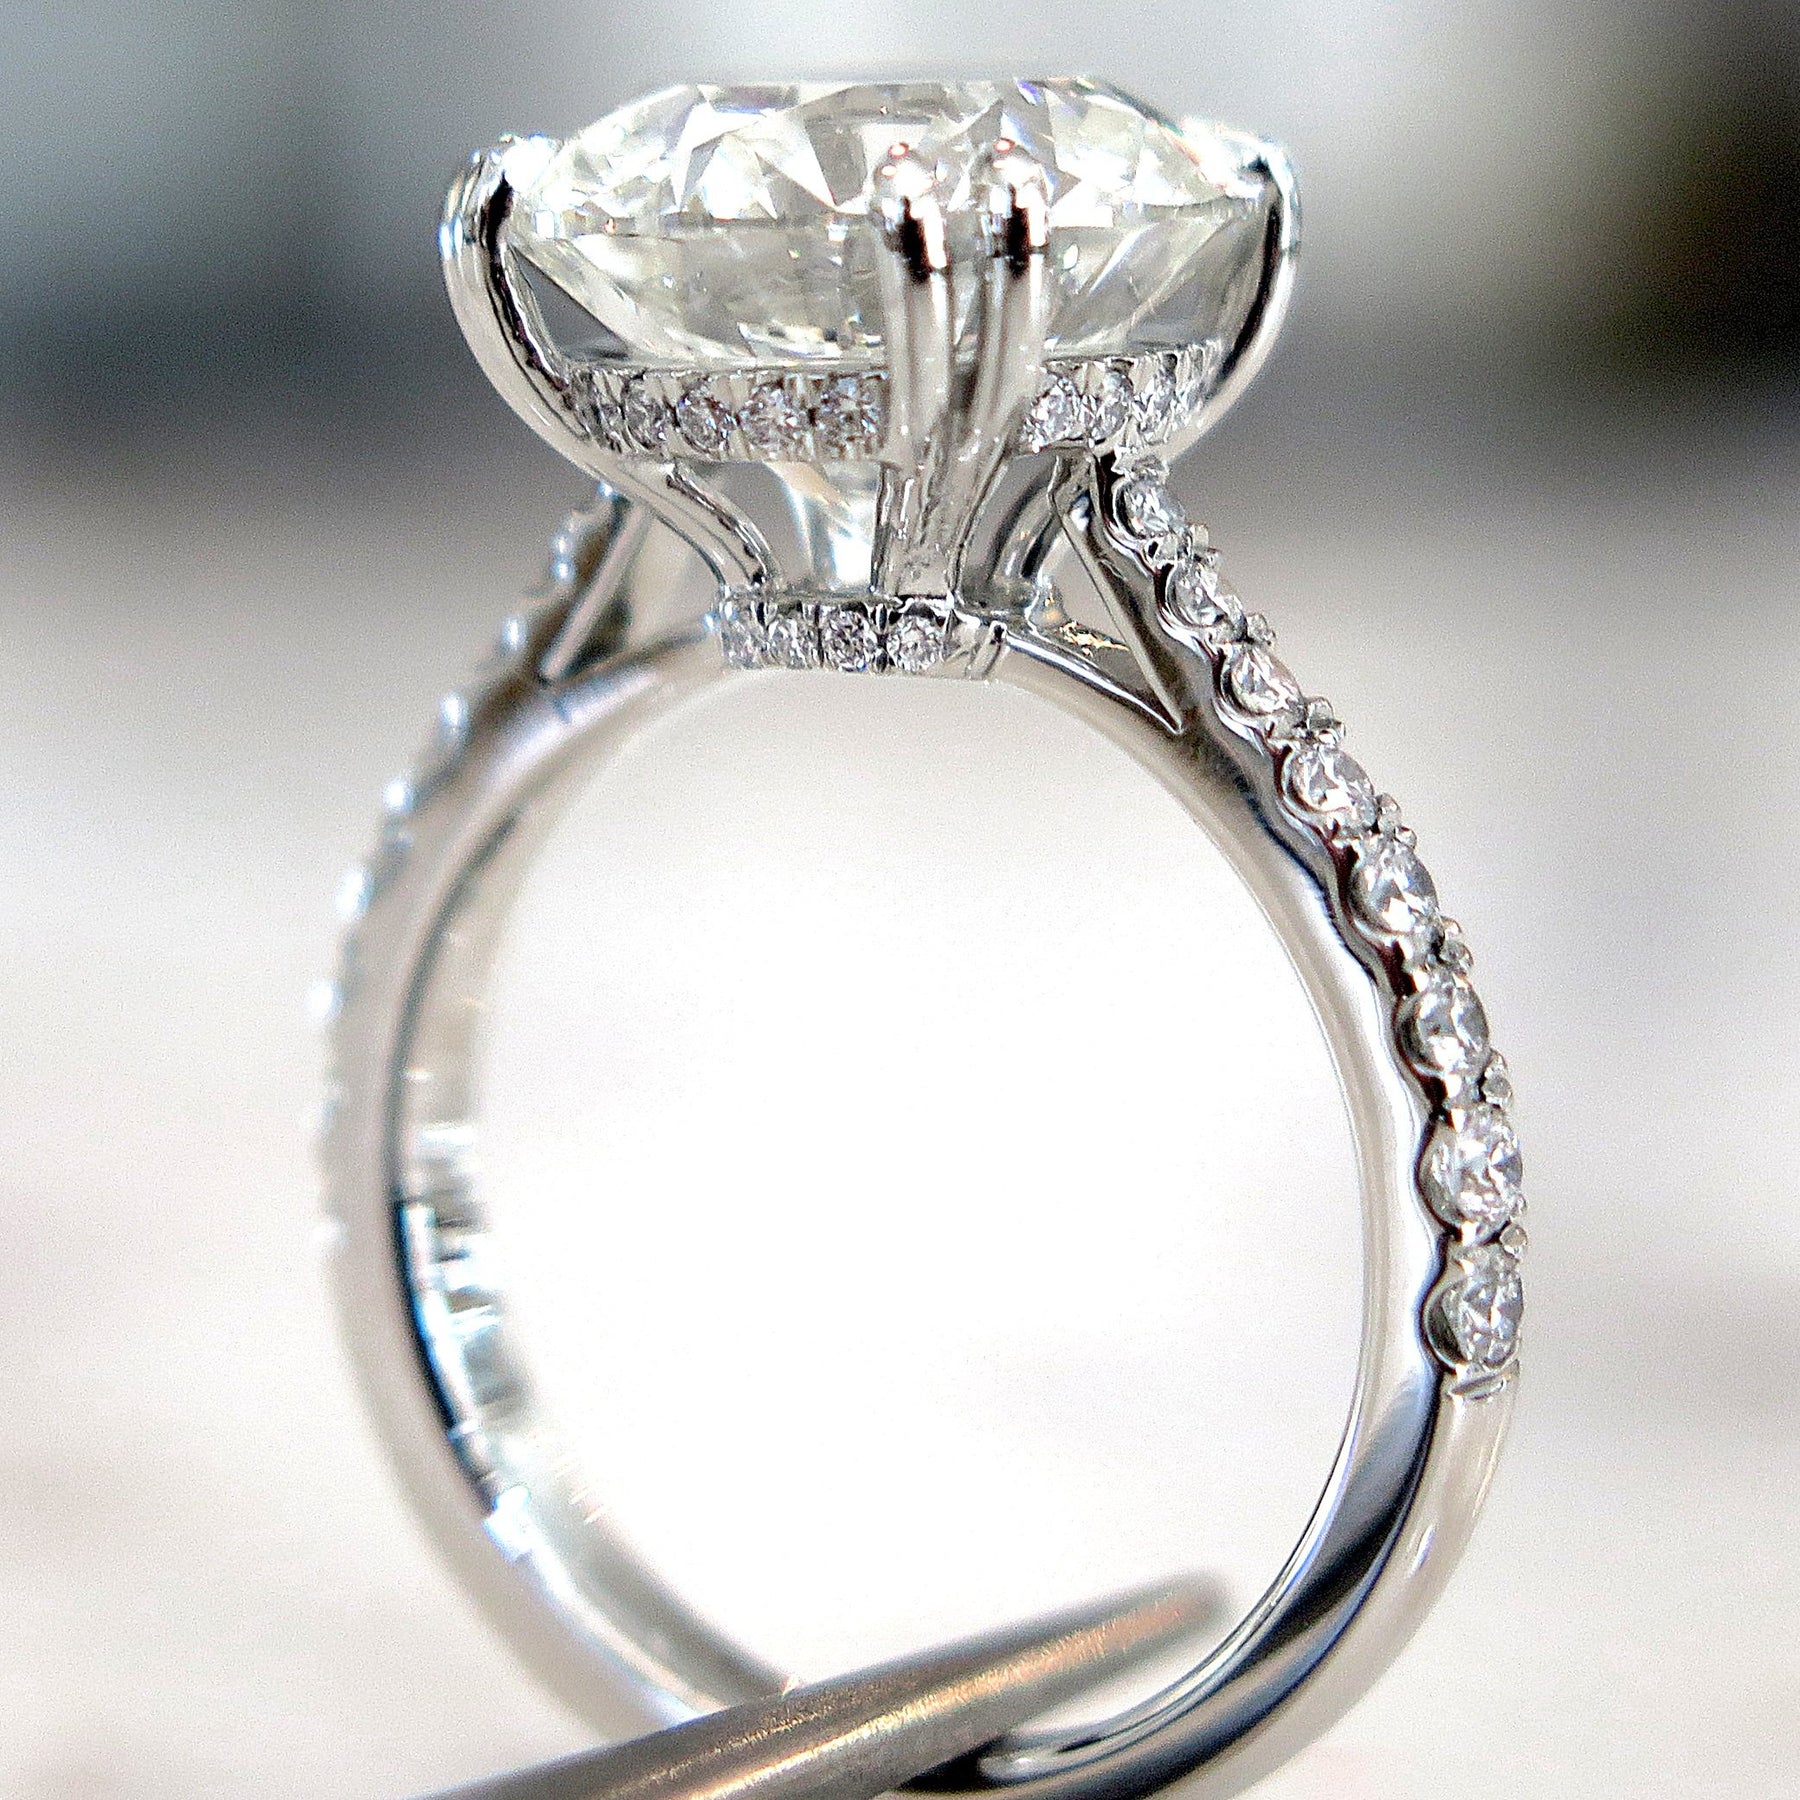 5ct Round Diamond Platinum Engagement Ring | Dana Walden Jewelry ...